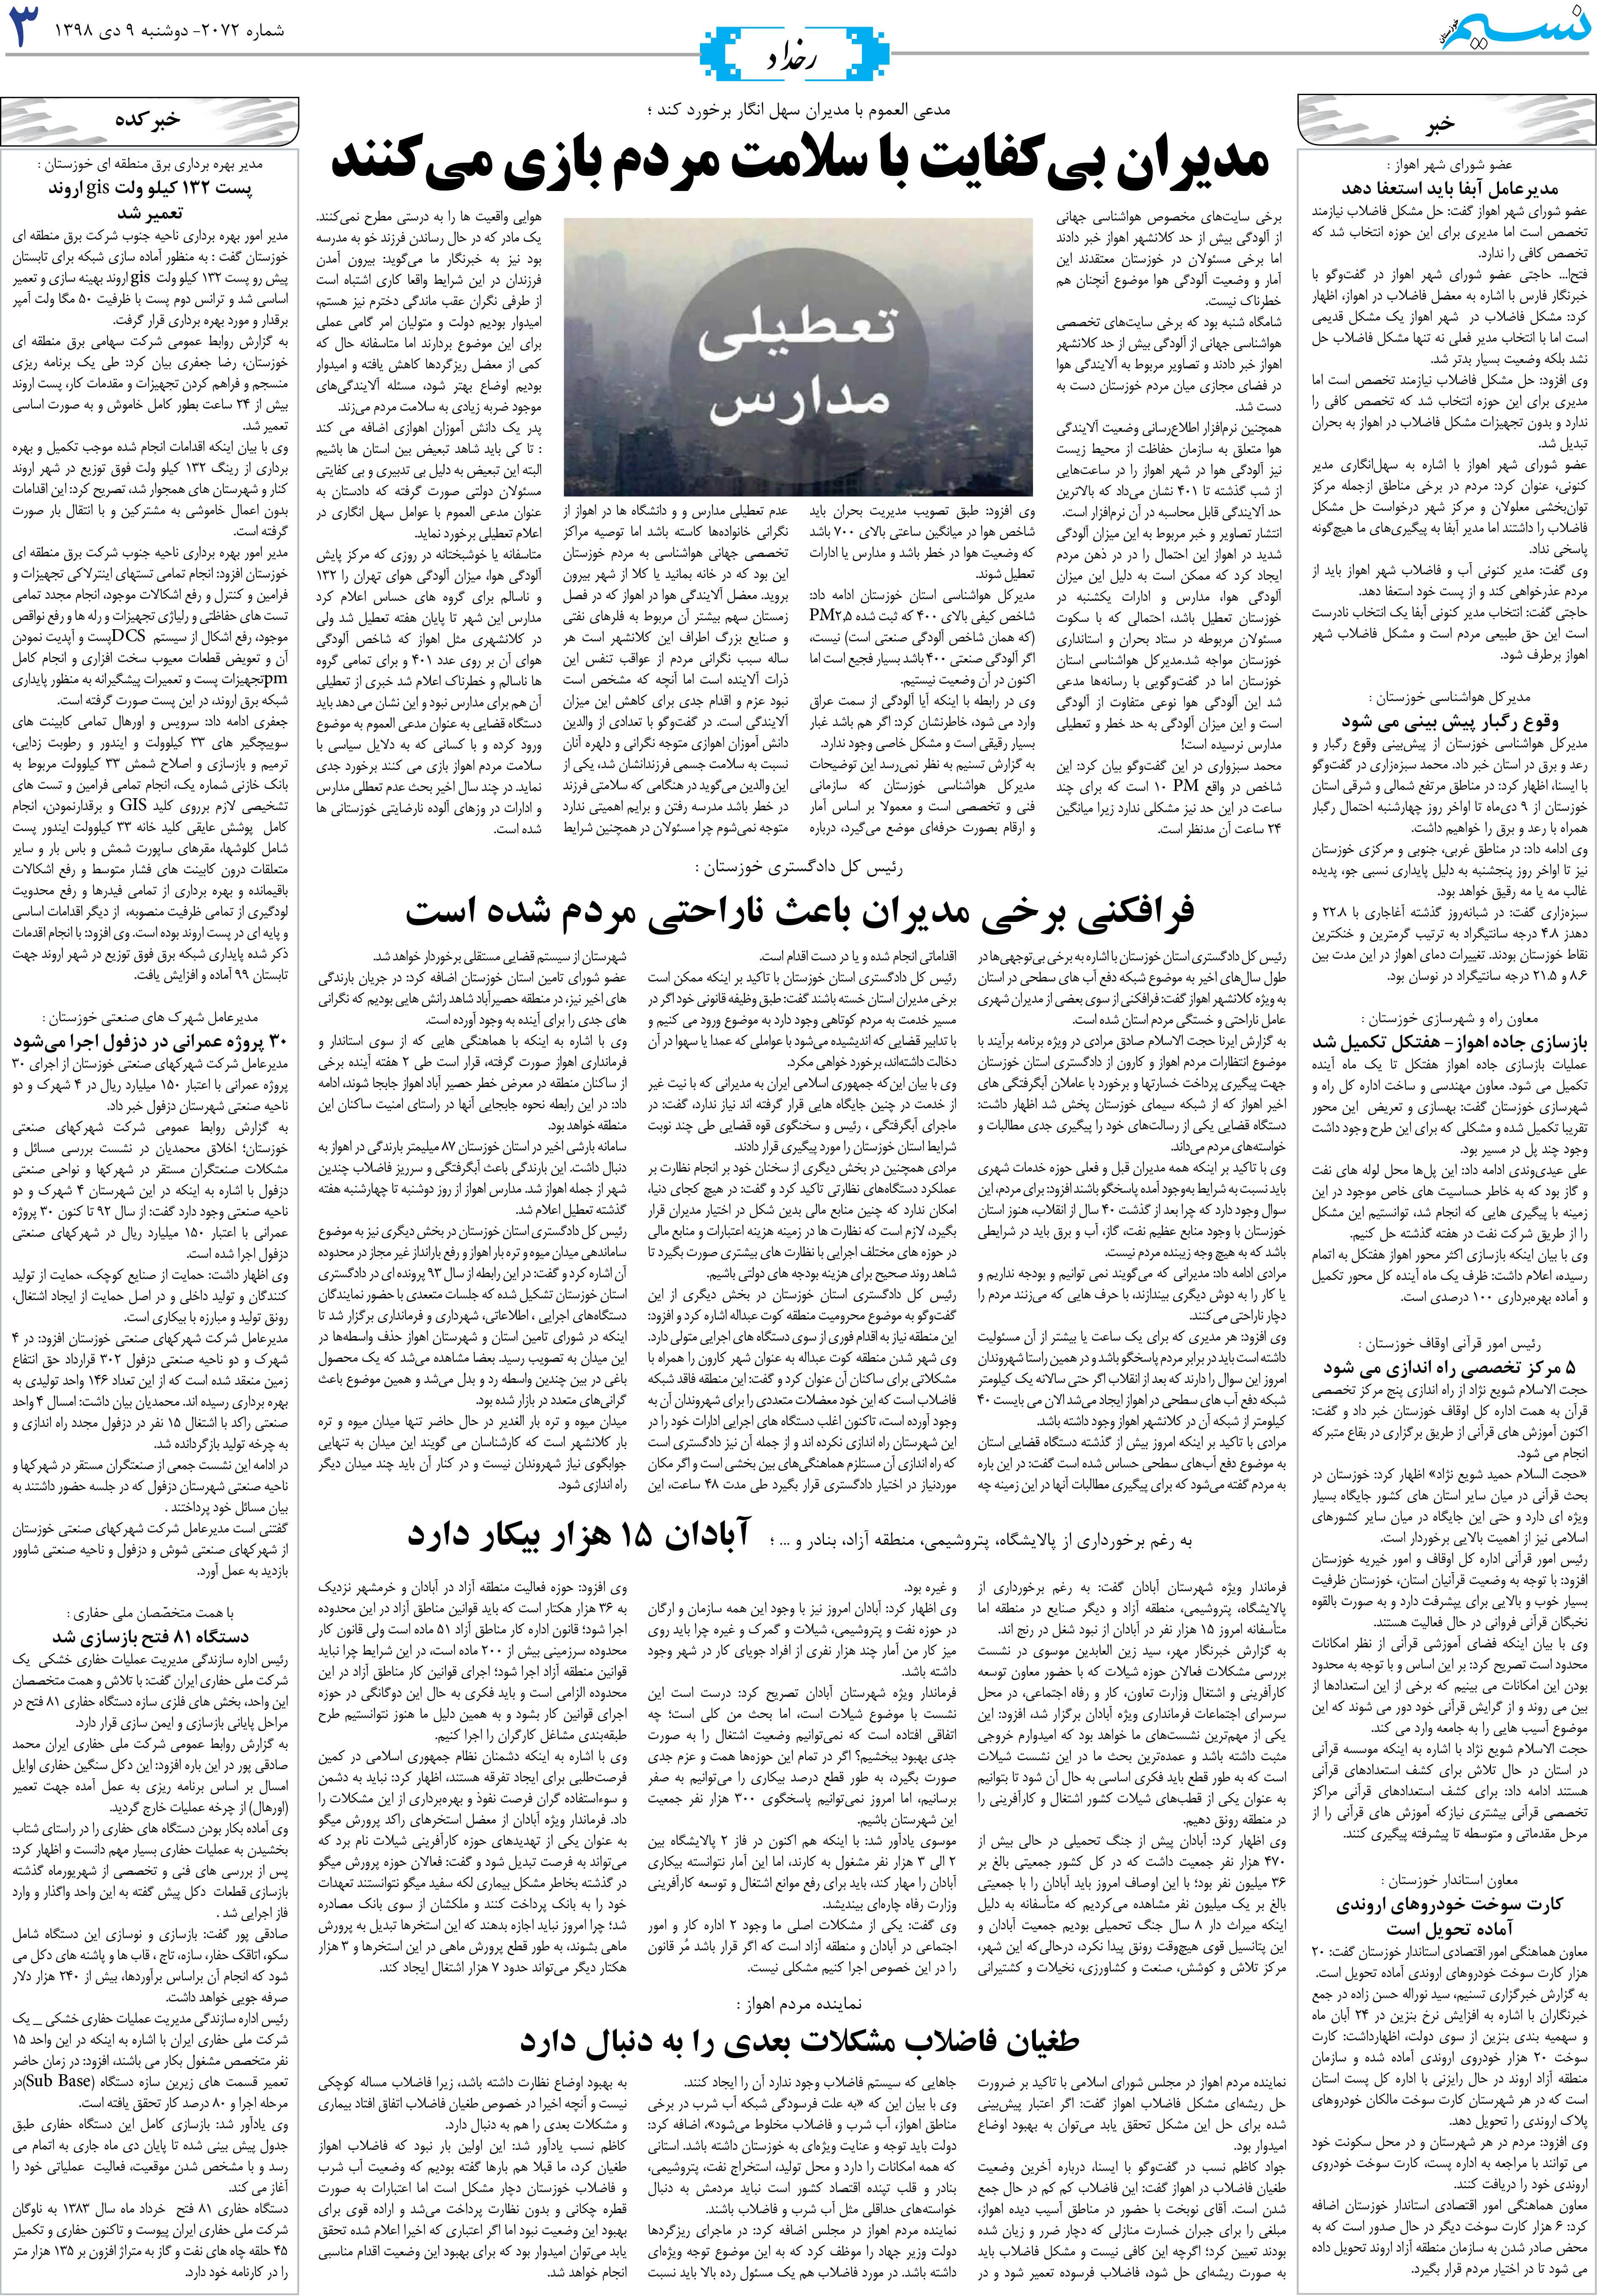 صفحه رخداد روزنامه نسیم شماره 2072